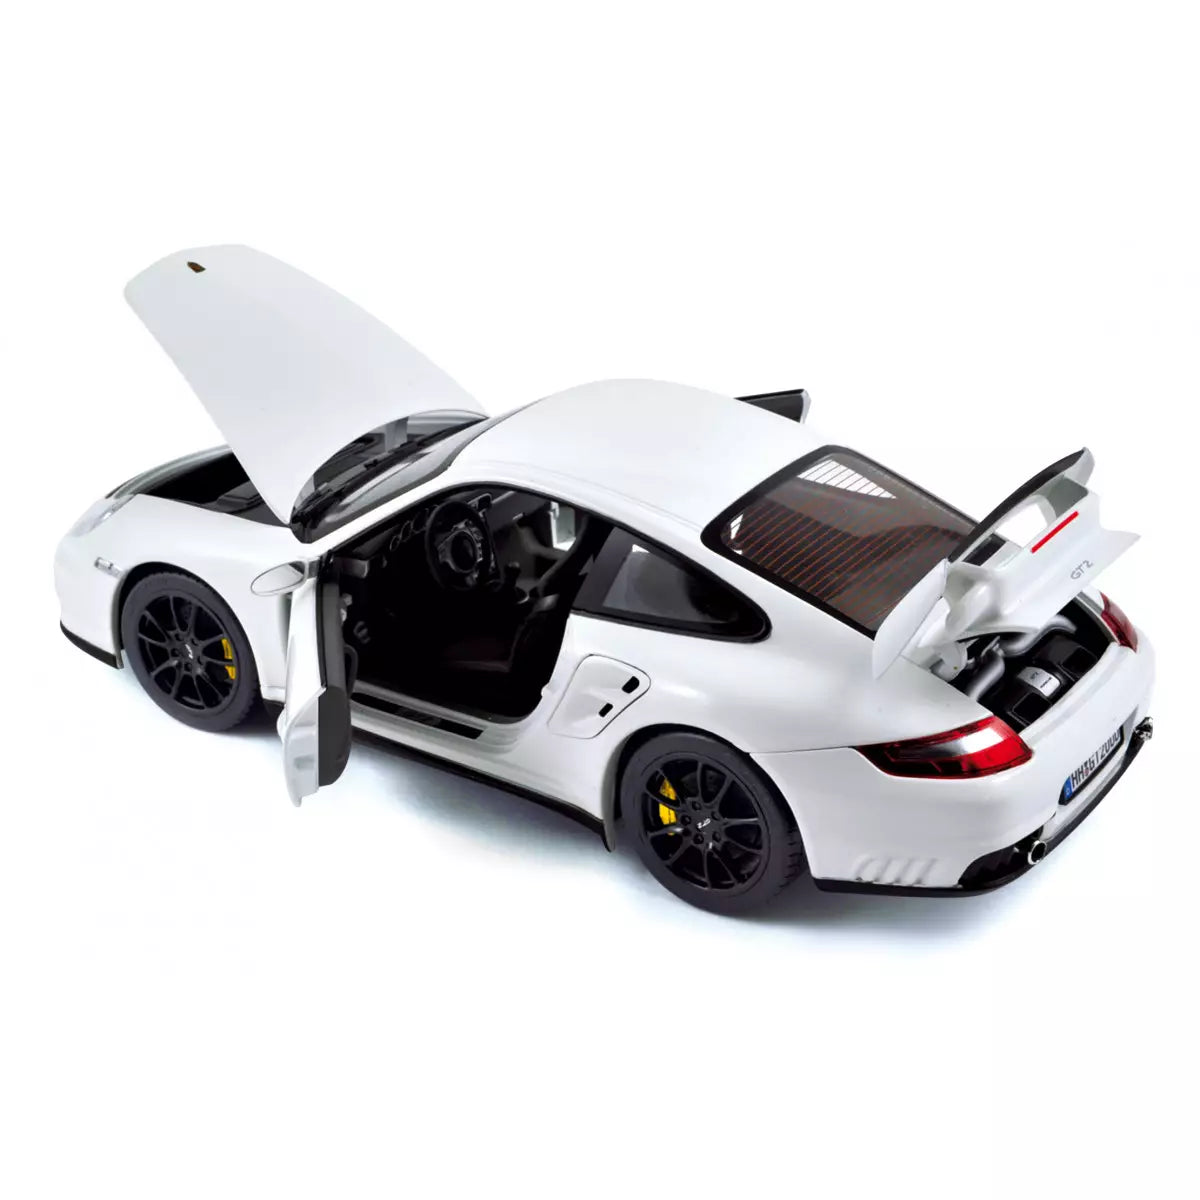 1:18 Porsche 911 997 GT2, 2007, hvid, Norev 187572, åben model